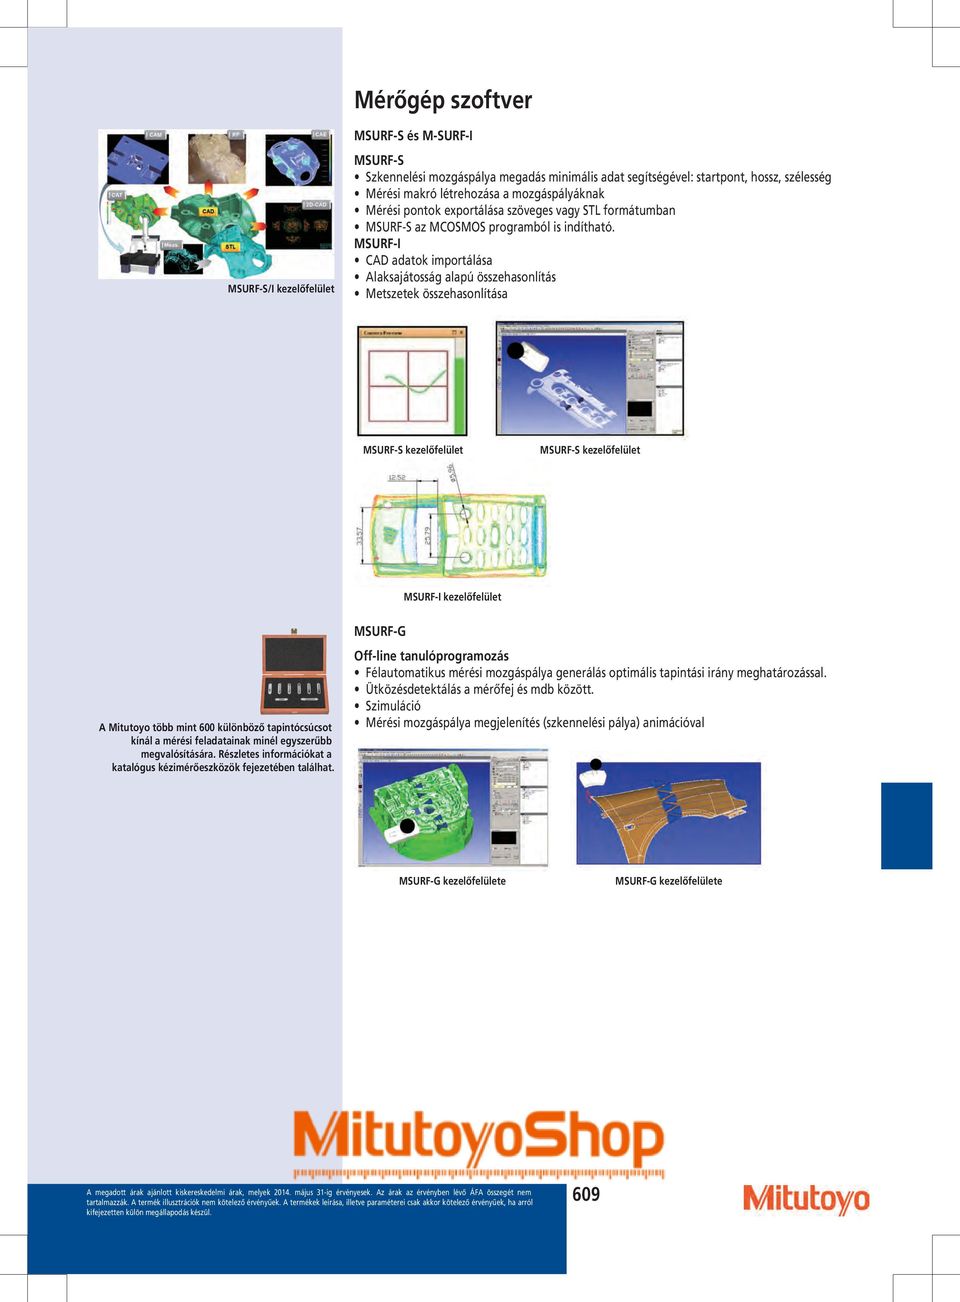 MSURF-I CAD adatok importálása Alaksajátosság alapú összehasonlítás Metszetek összehasonlítása MSURF-S kezelőfelület MSURF-S kezelőfelület MSURF-I kezelőfelület MSURF-G Off-line